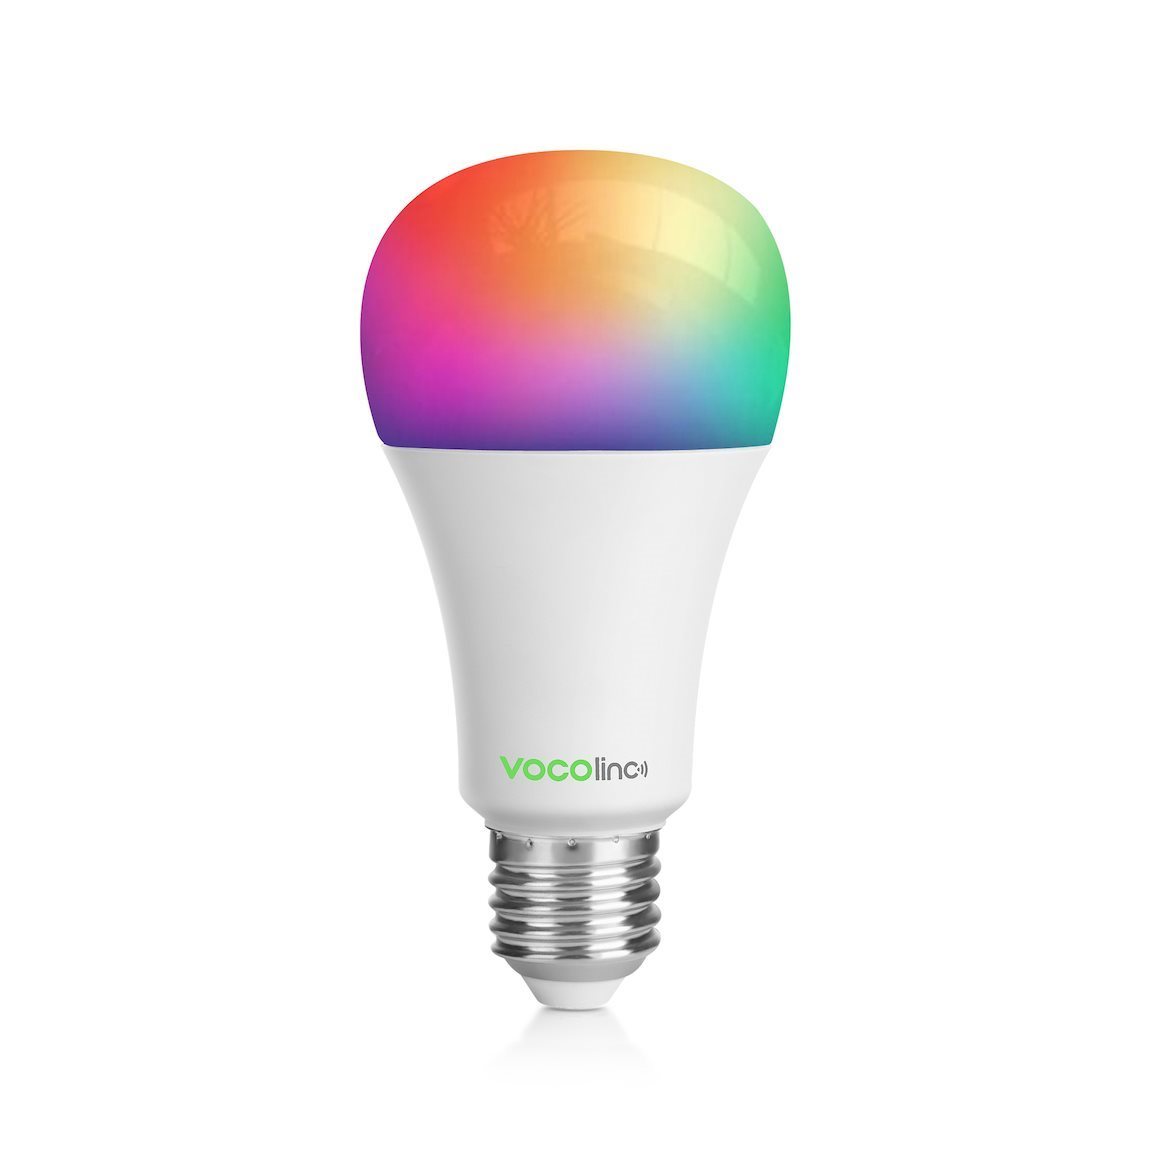 LED izzó Vocolinc Smart izzó L3 ColorLight, 850 lm, E27